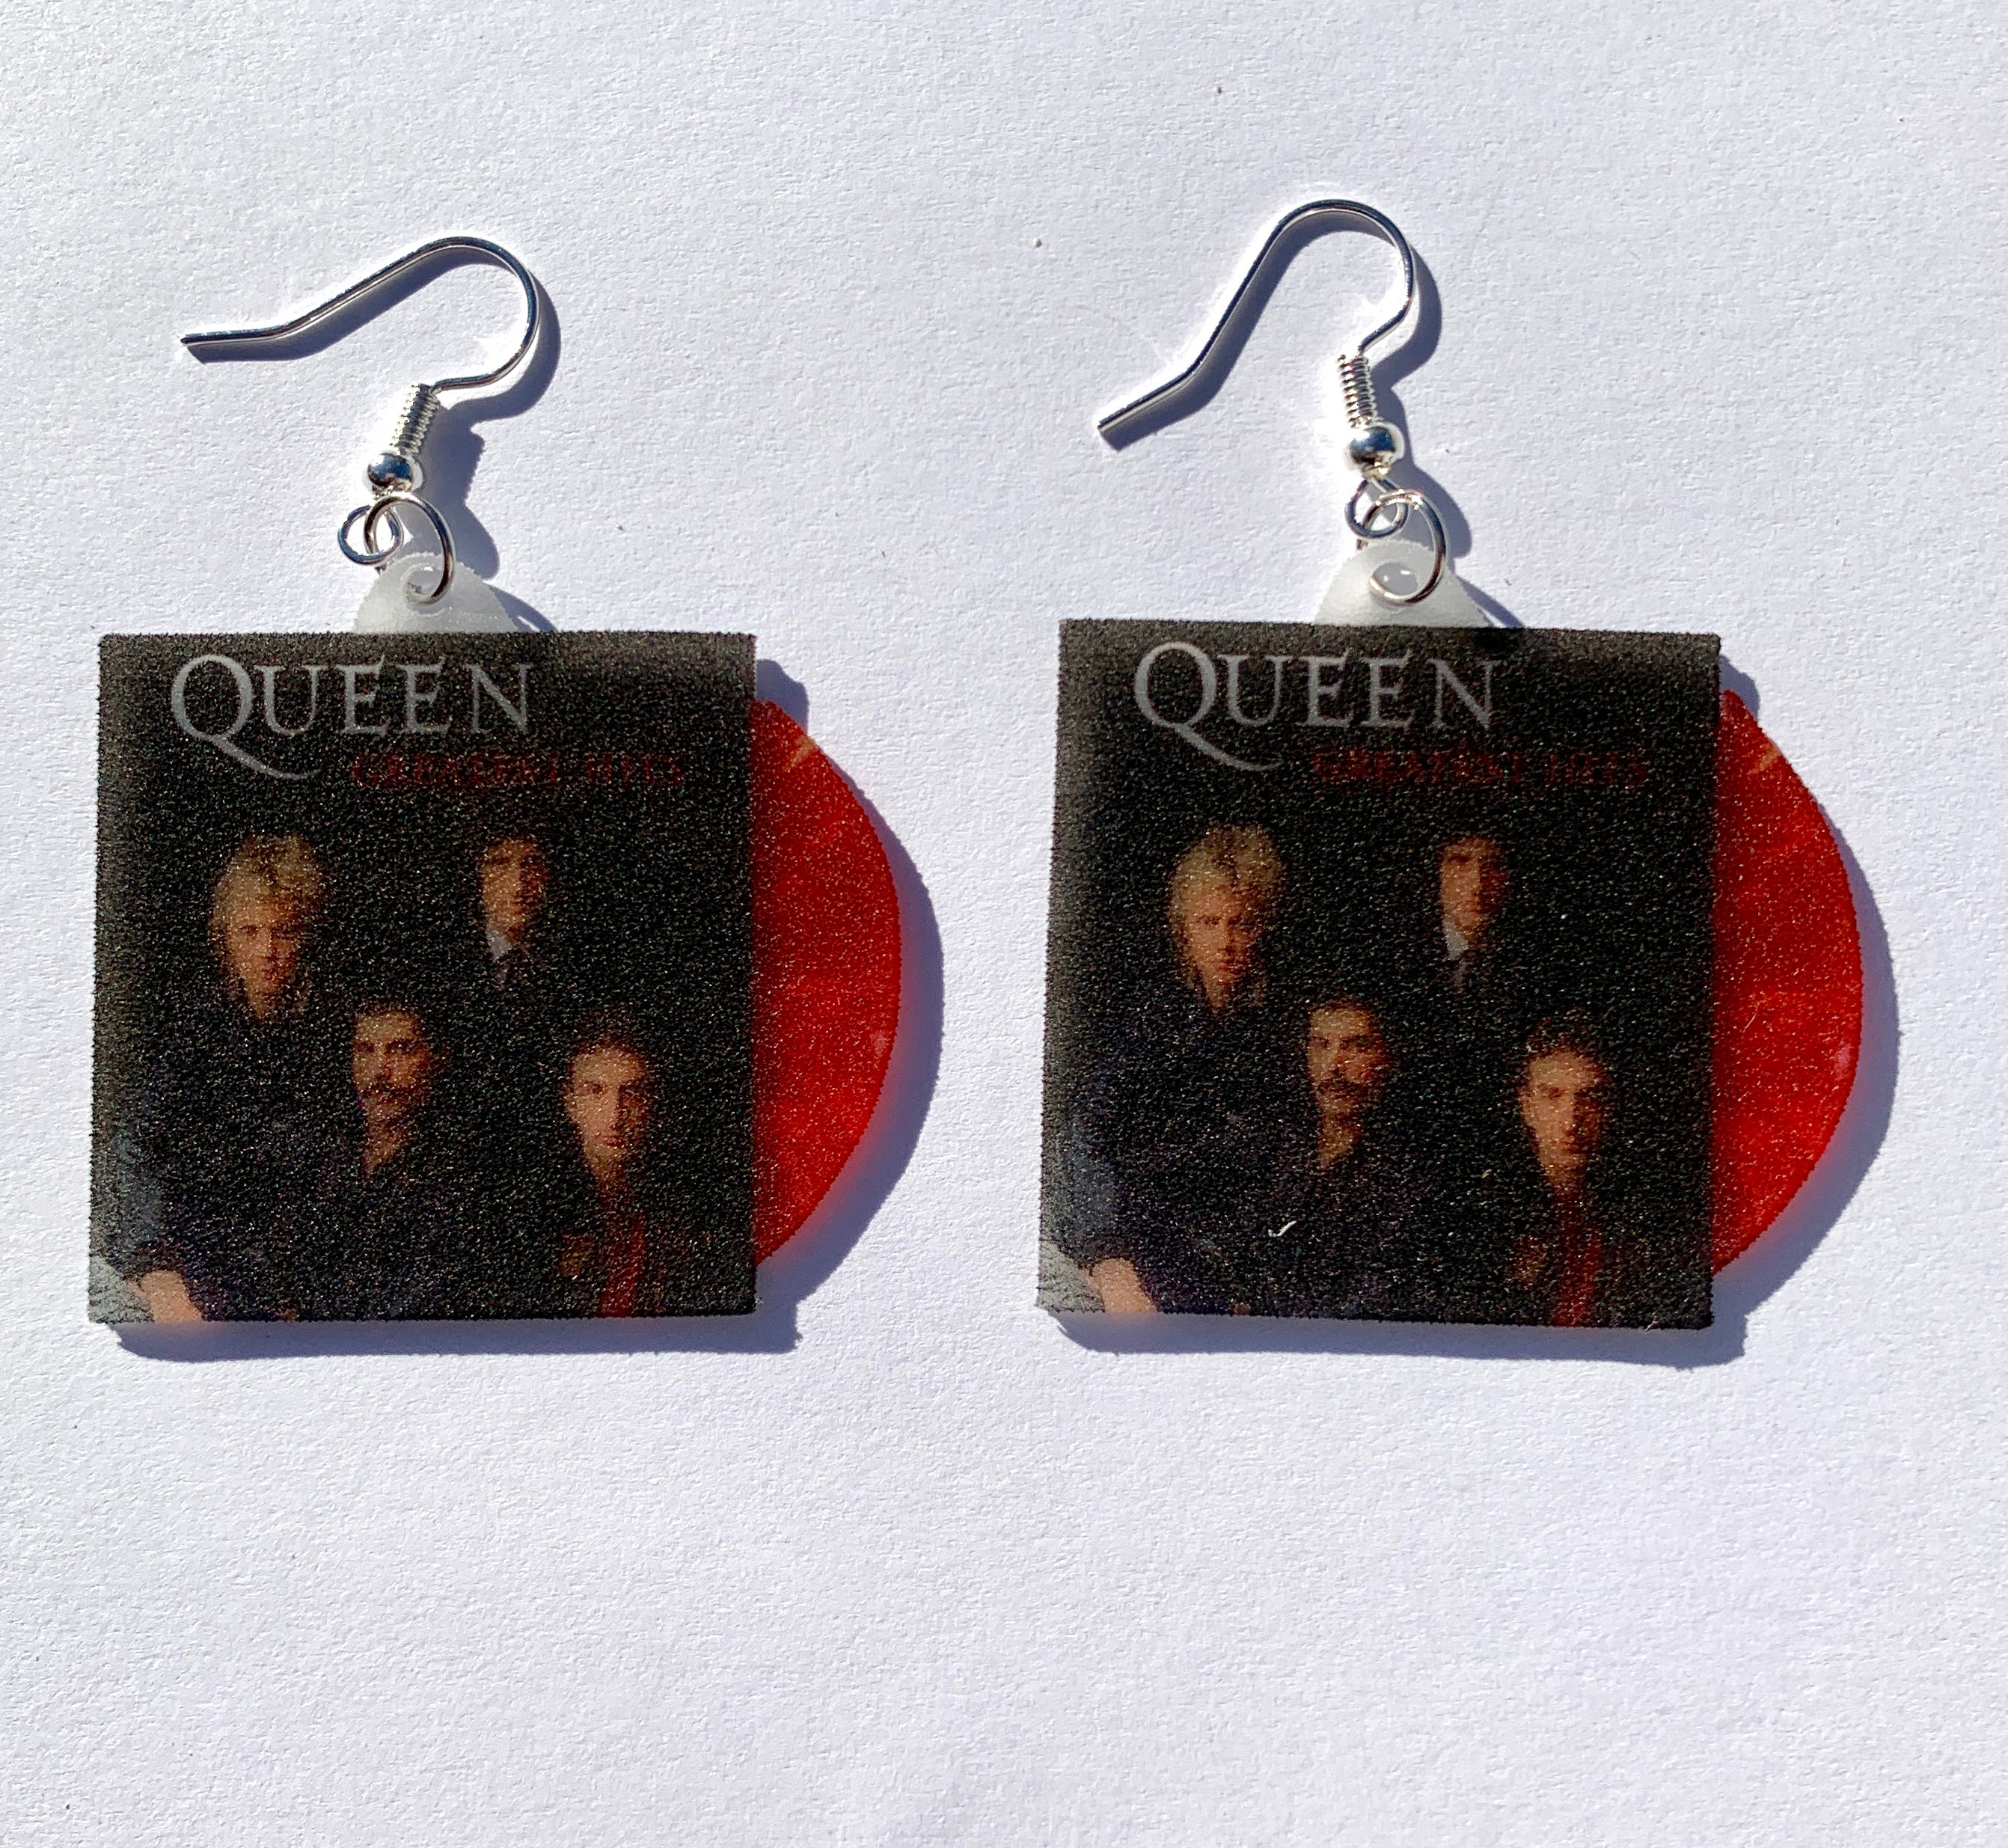 Queen Complete Collection Vinyl Album Handmade Earrings!